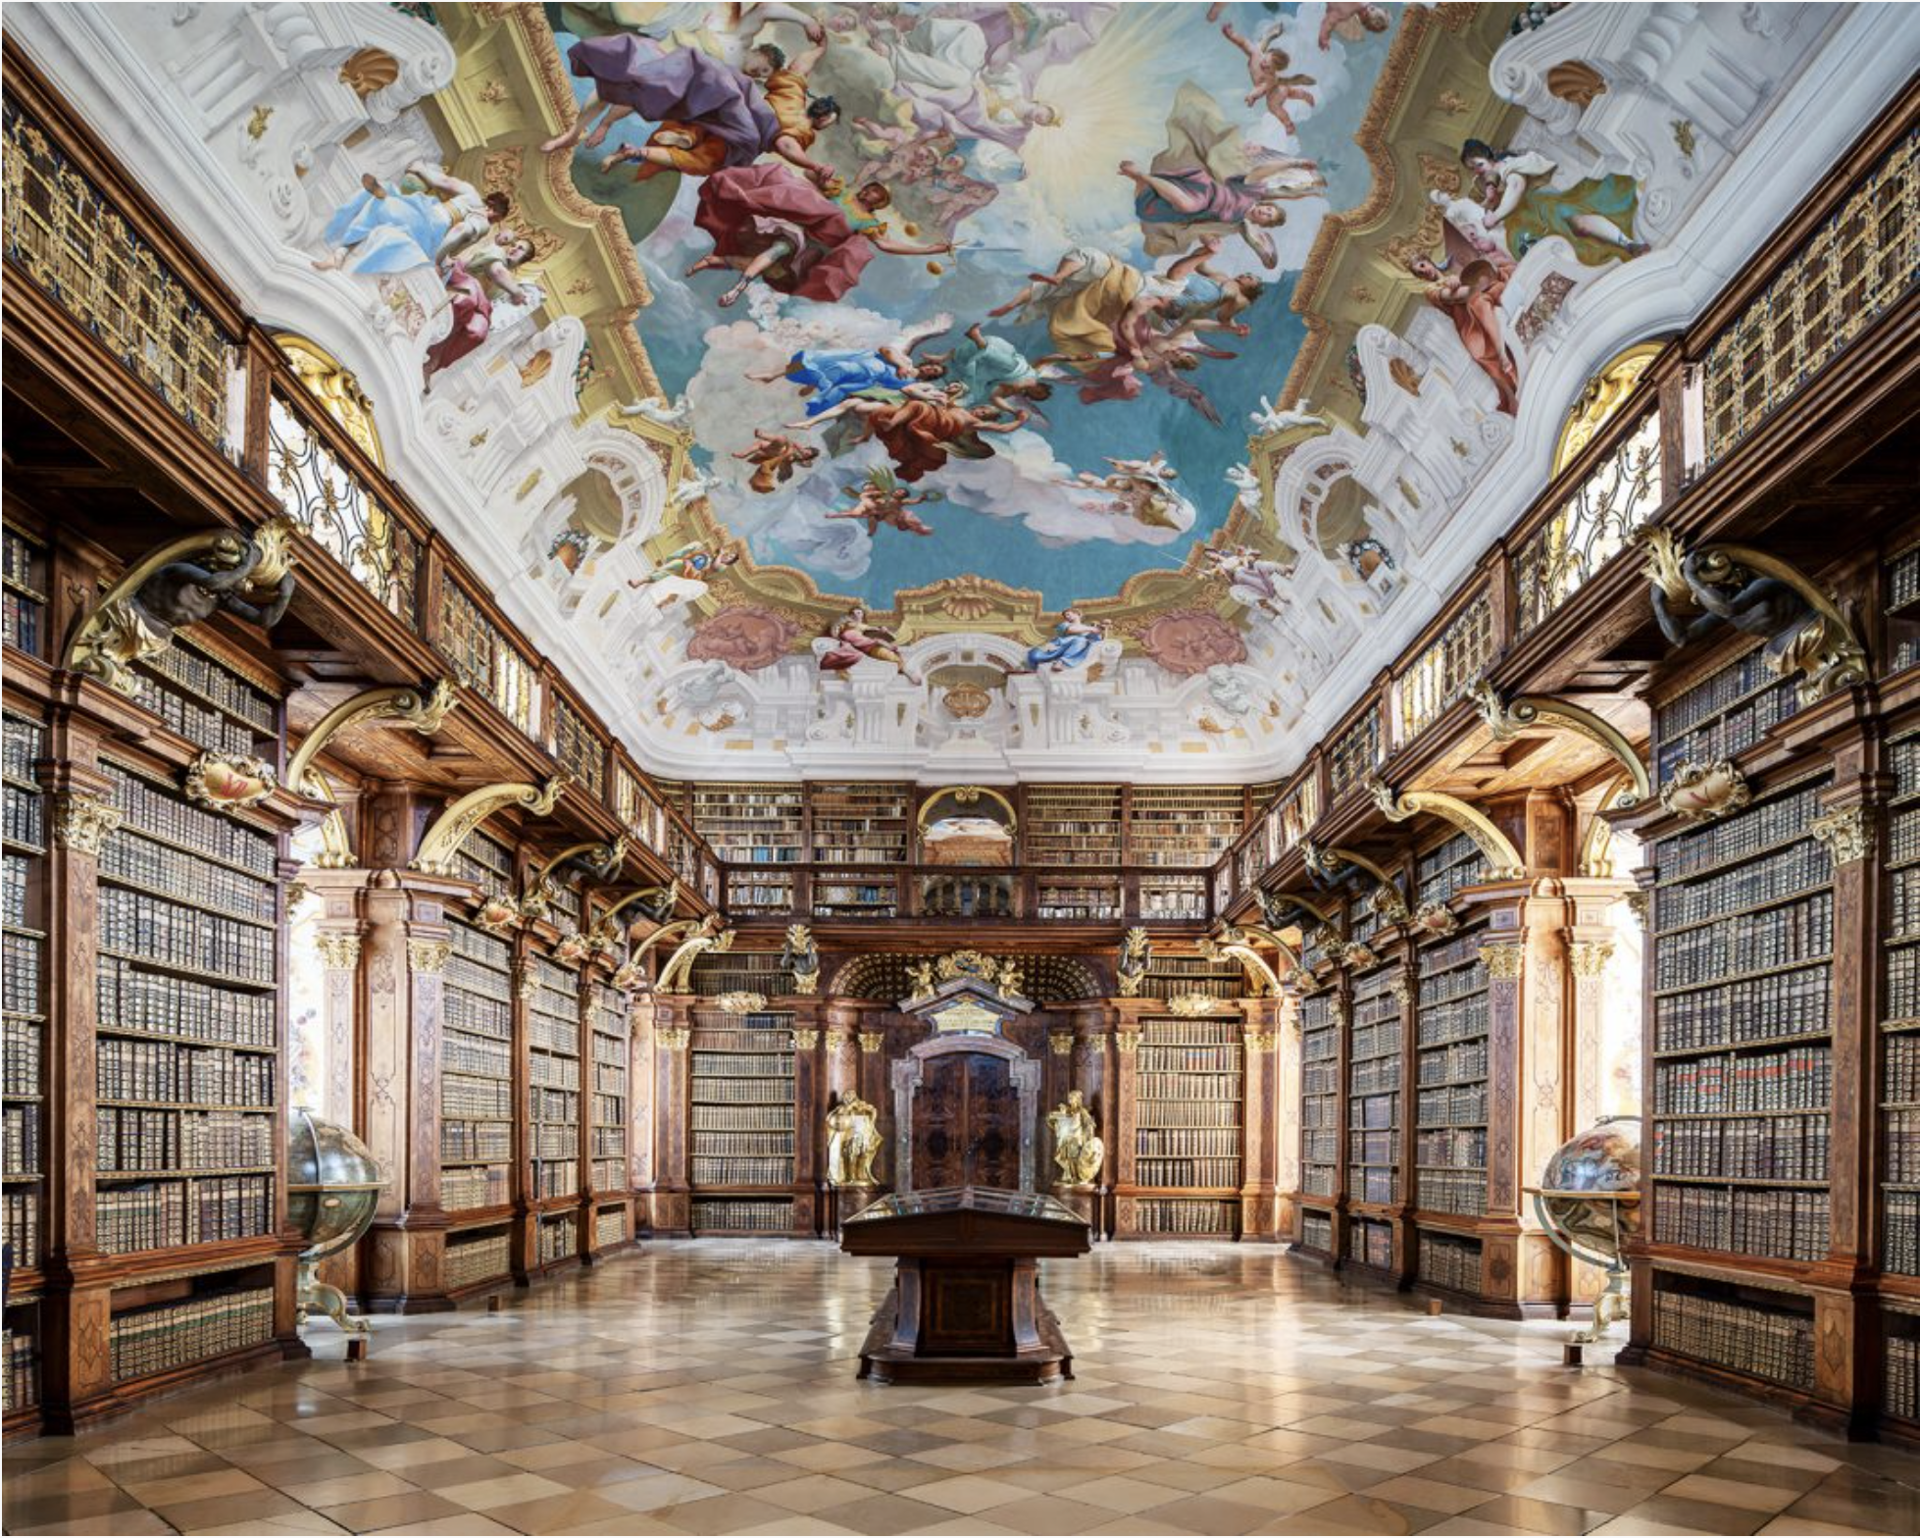 Melk Abbey Library, Austria by Reinhard Gorner